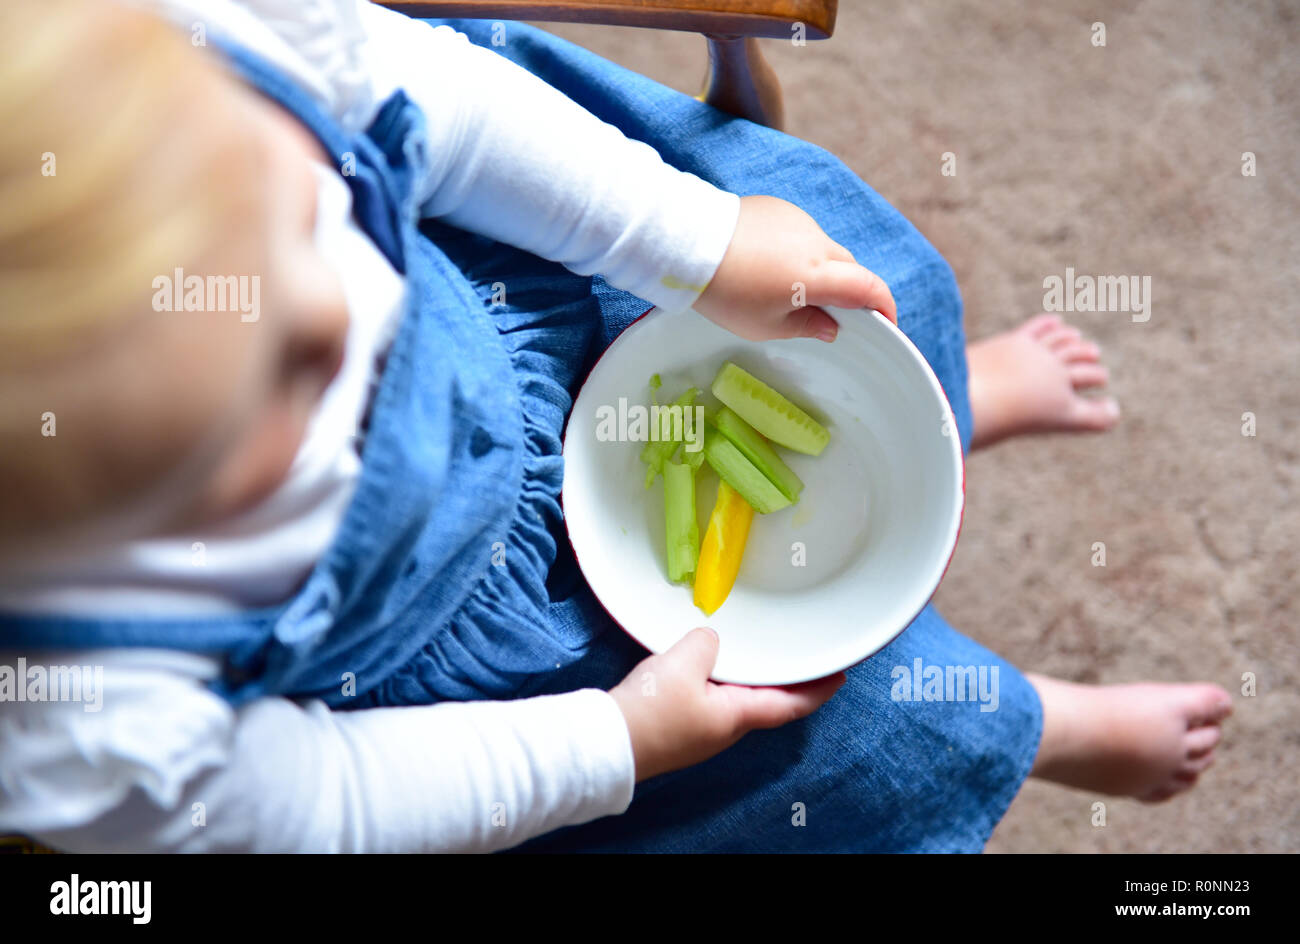 Junge Baby Kleinkind Mädchen im Alter von 2 Jahren essen gesunde Ernährung von frischem Paprika und Gurken snack Foto aufgenommen von Simon Dack Stockfoto